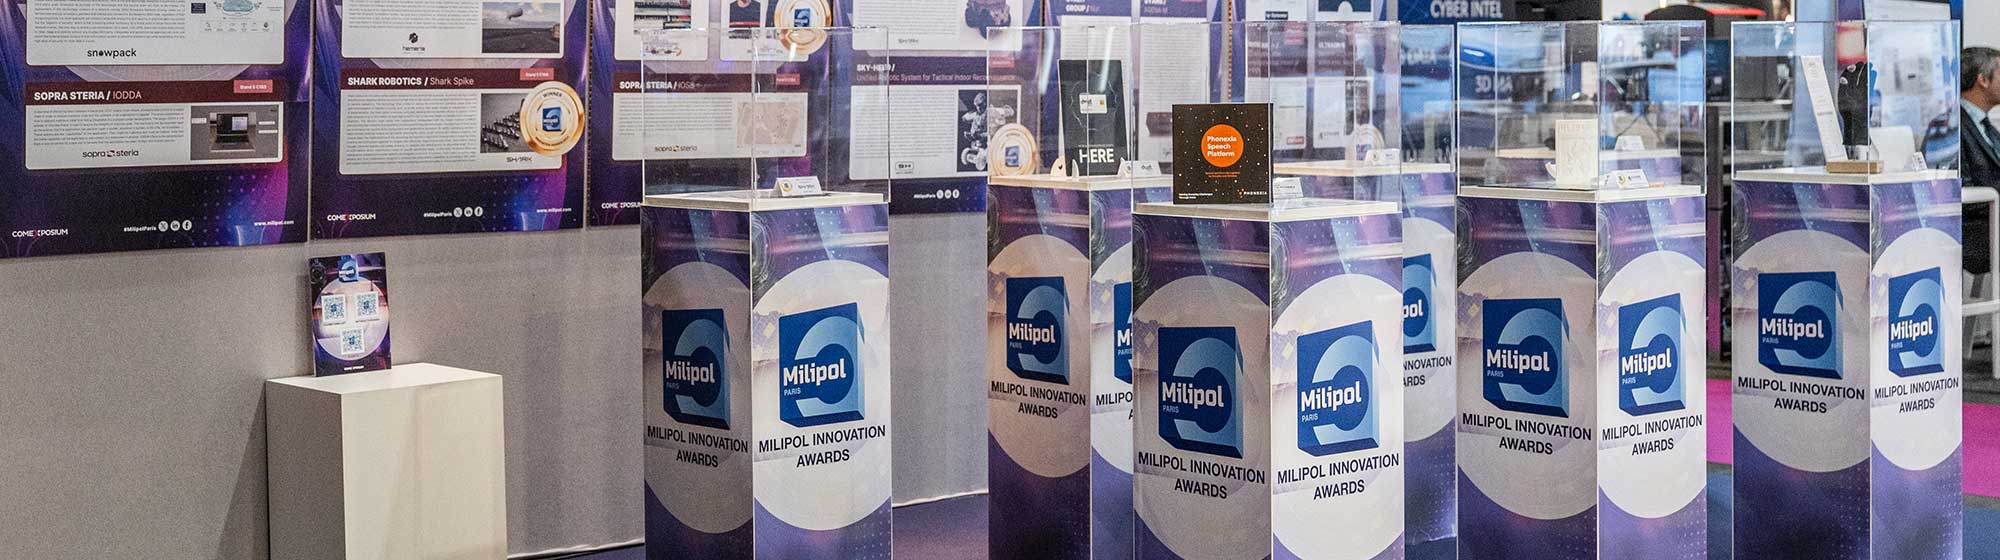 stand des milipol innovation awards